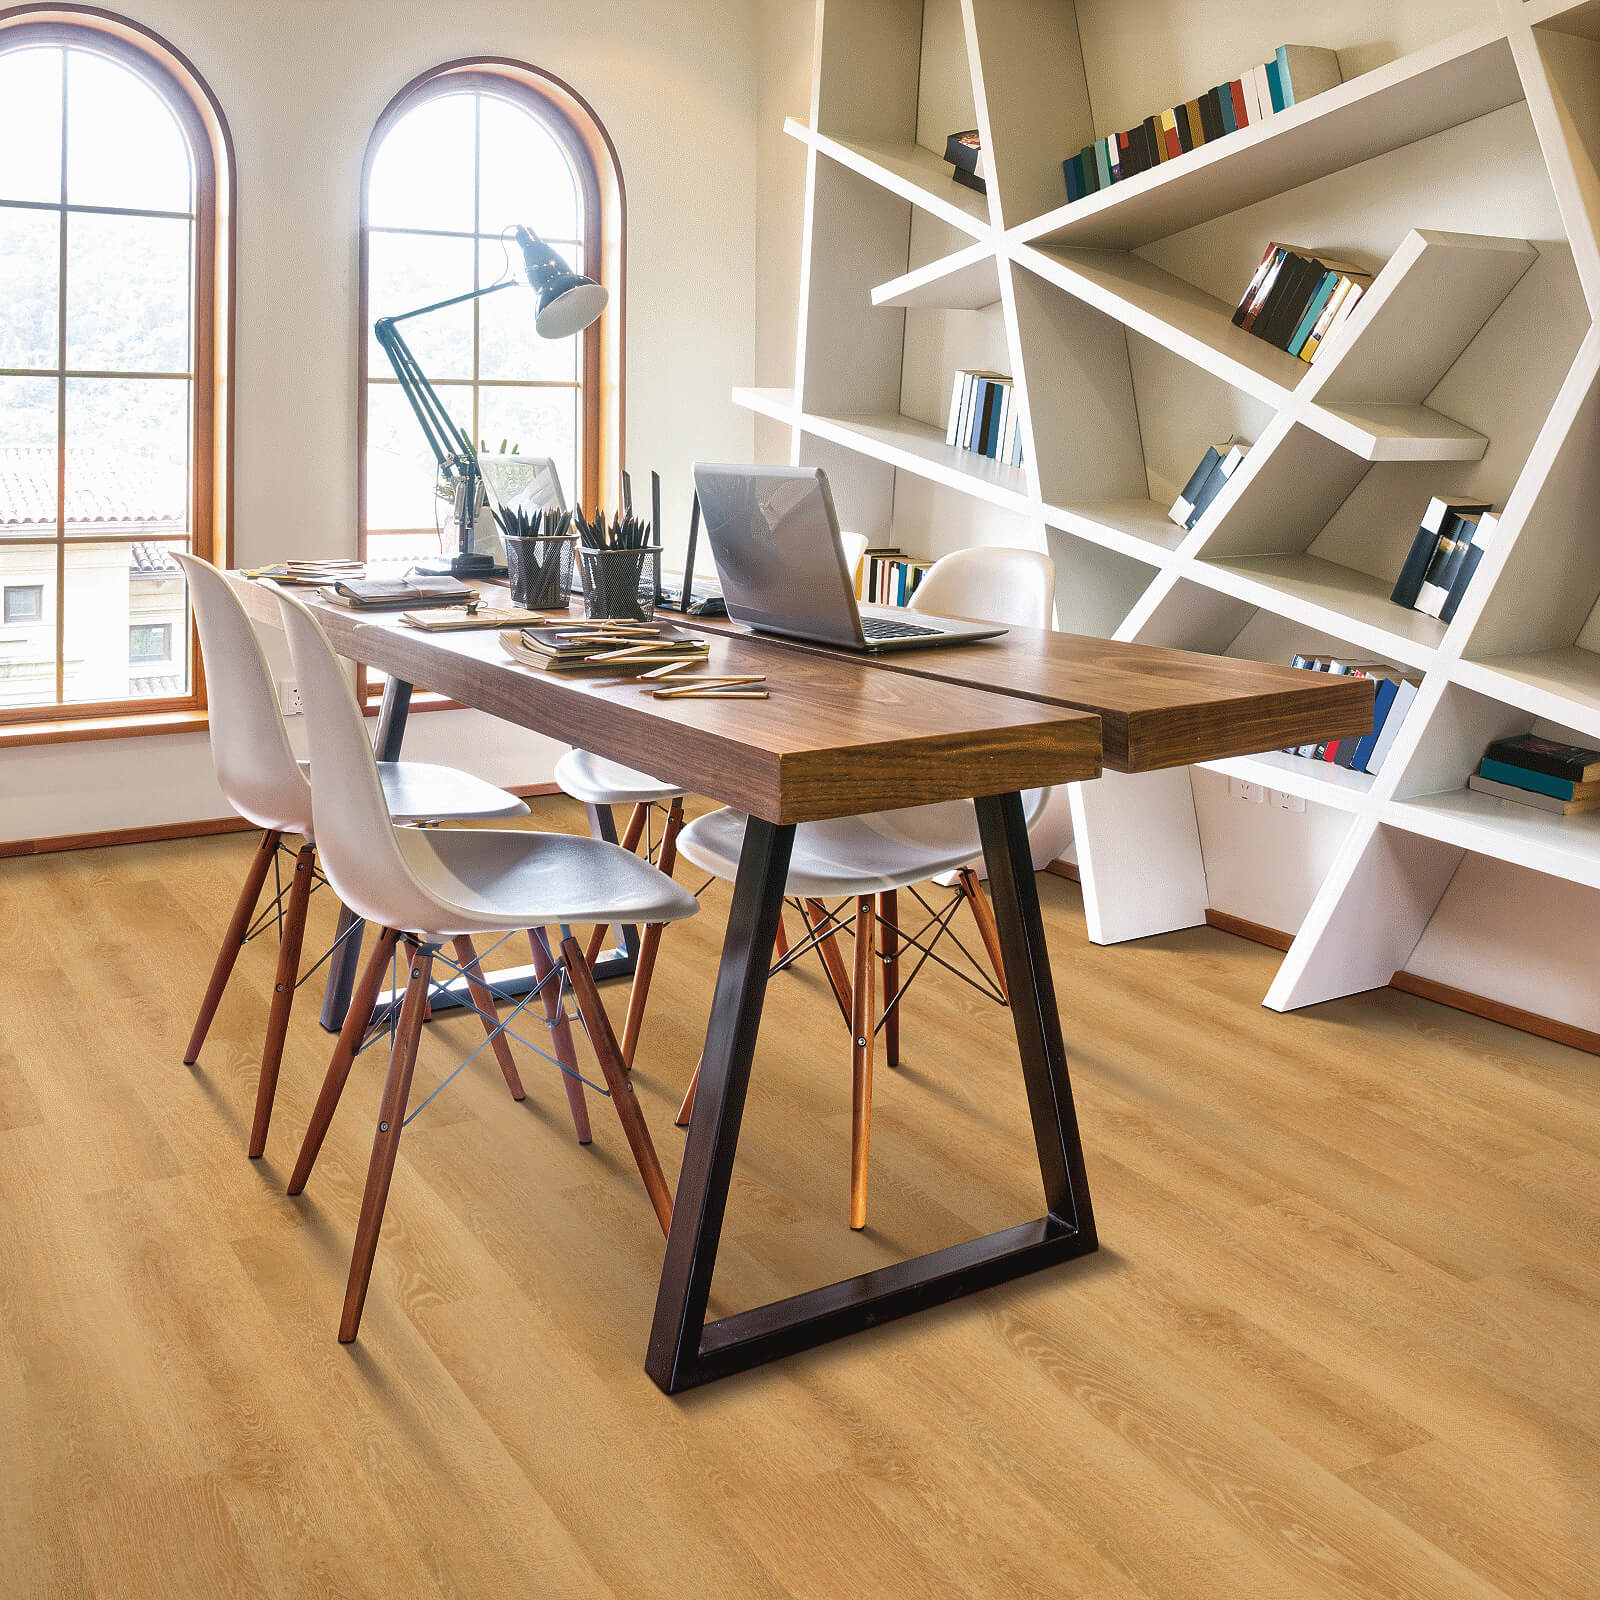 Vinyl flooring for study room | Bodamer Brothers Flooring